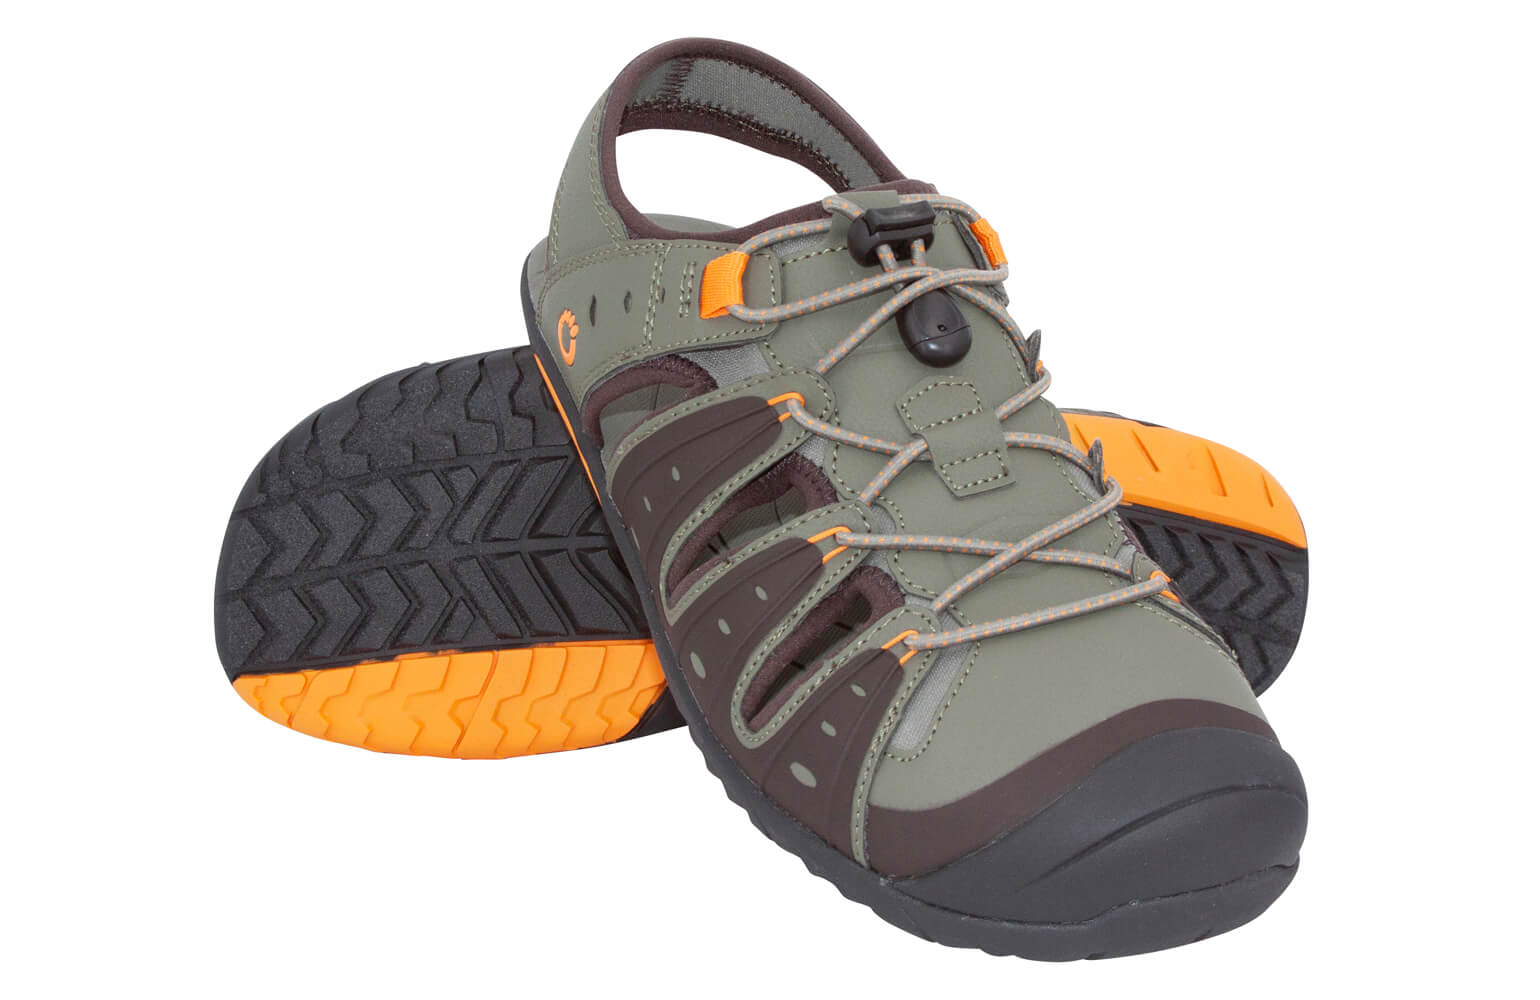 Trail Shoe from Xero Shoes - Men